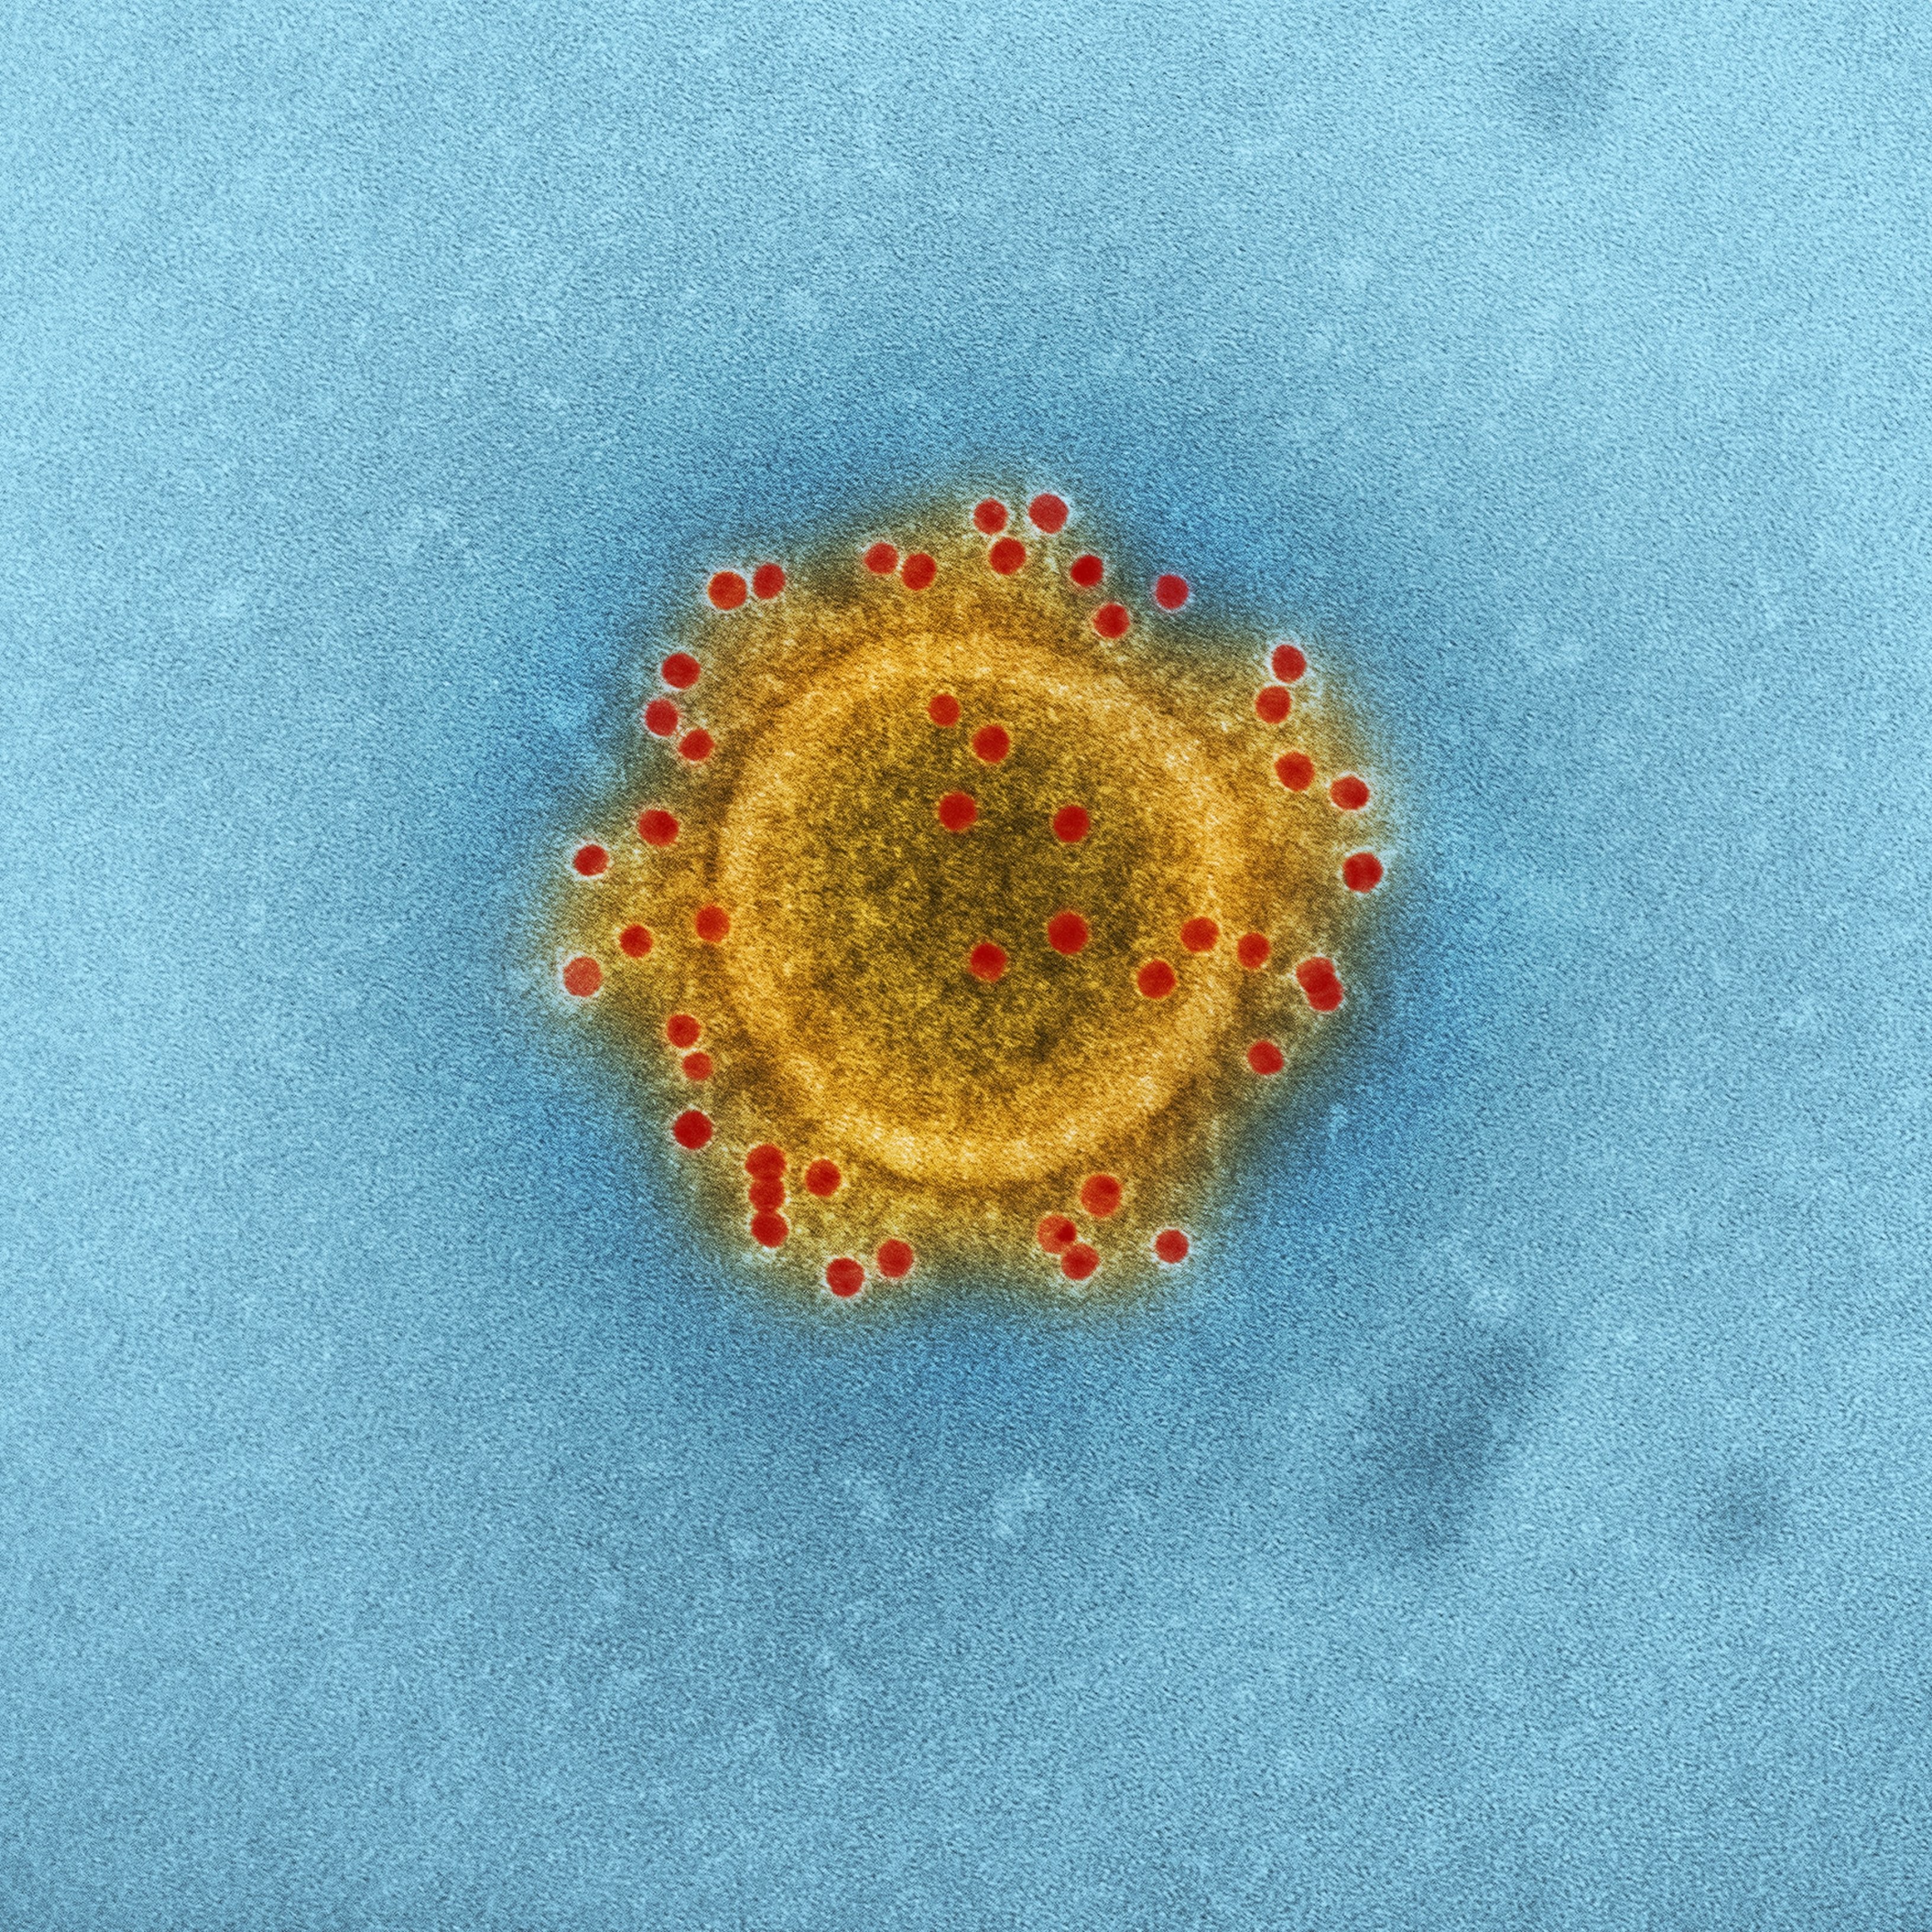 Dos nuevas variantes del coronavirus que preocupan a la comunidad científica